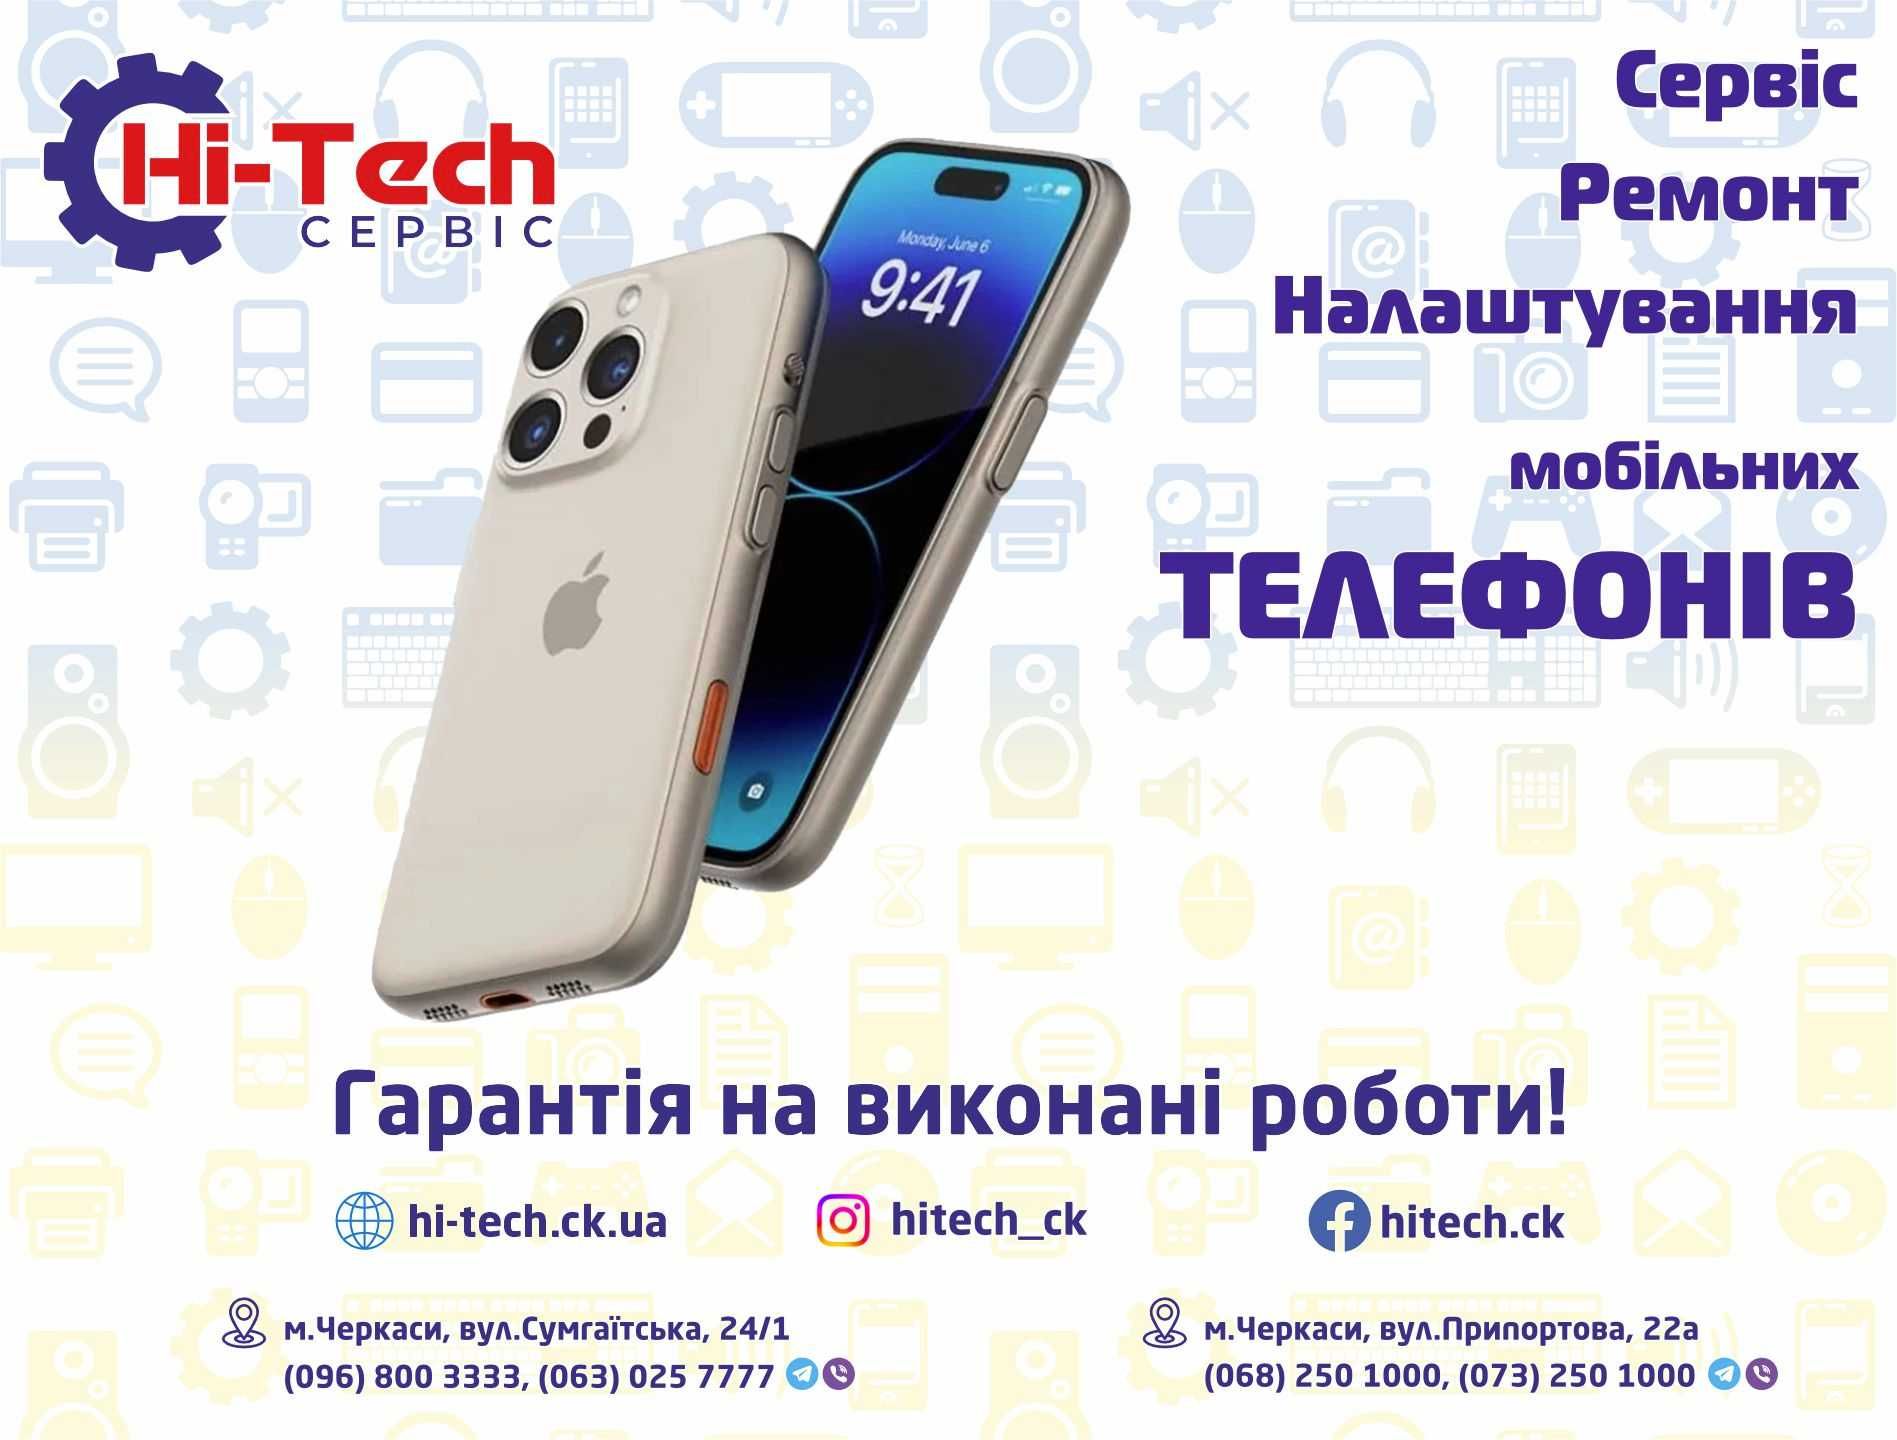 СЦ Hi-Tech. Ремонт телефонів, сервіс, налаштування у м.Черкаси